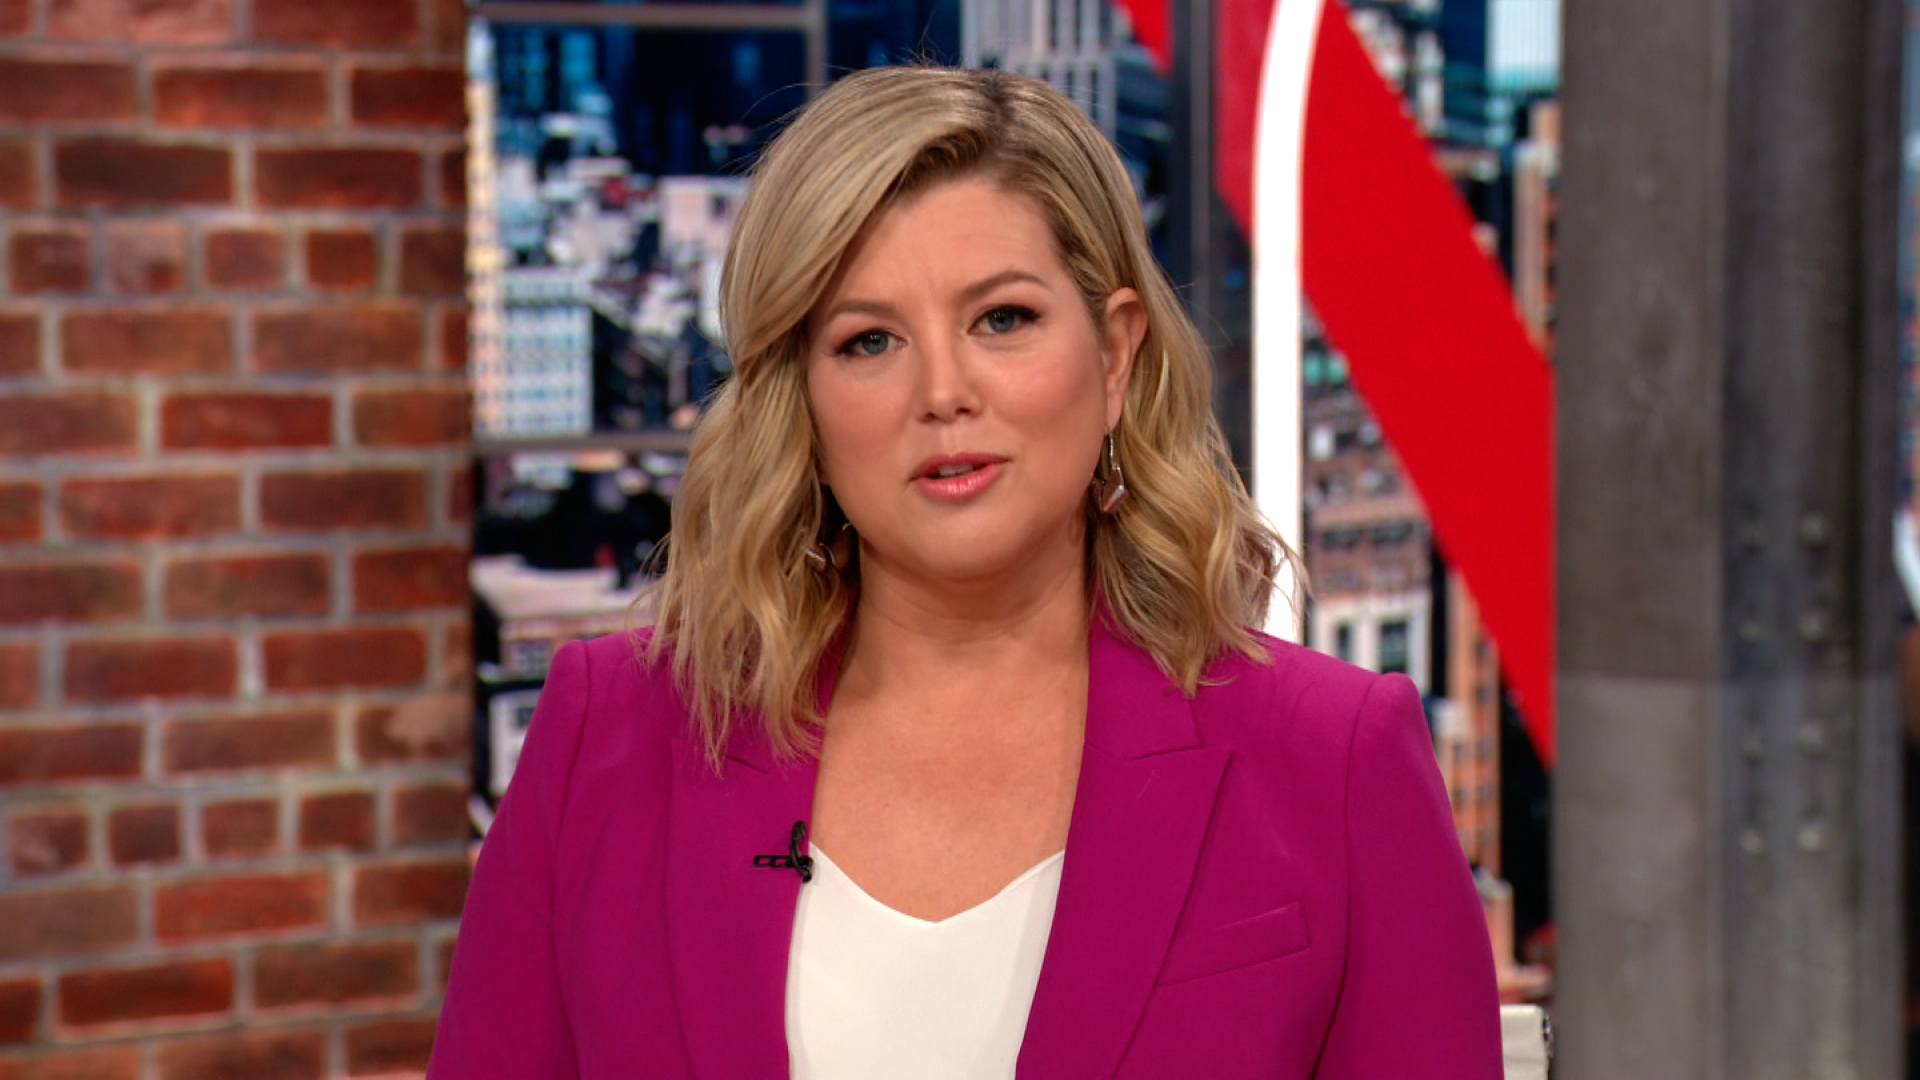 Brianna Keilar: Fox is not news, no matter what it calls itself - CNN Video...